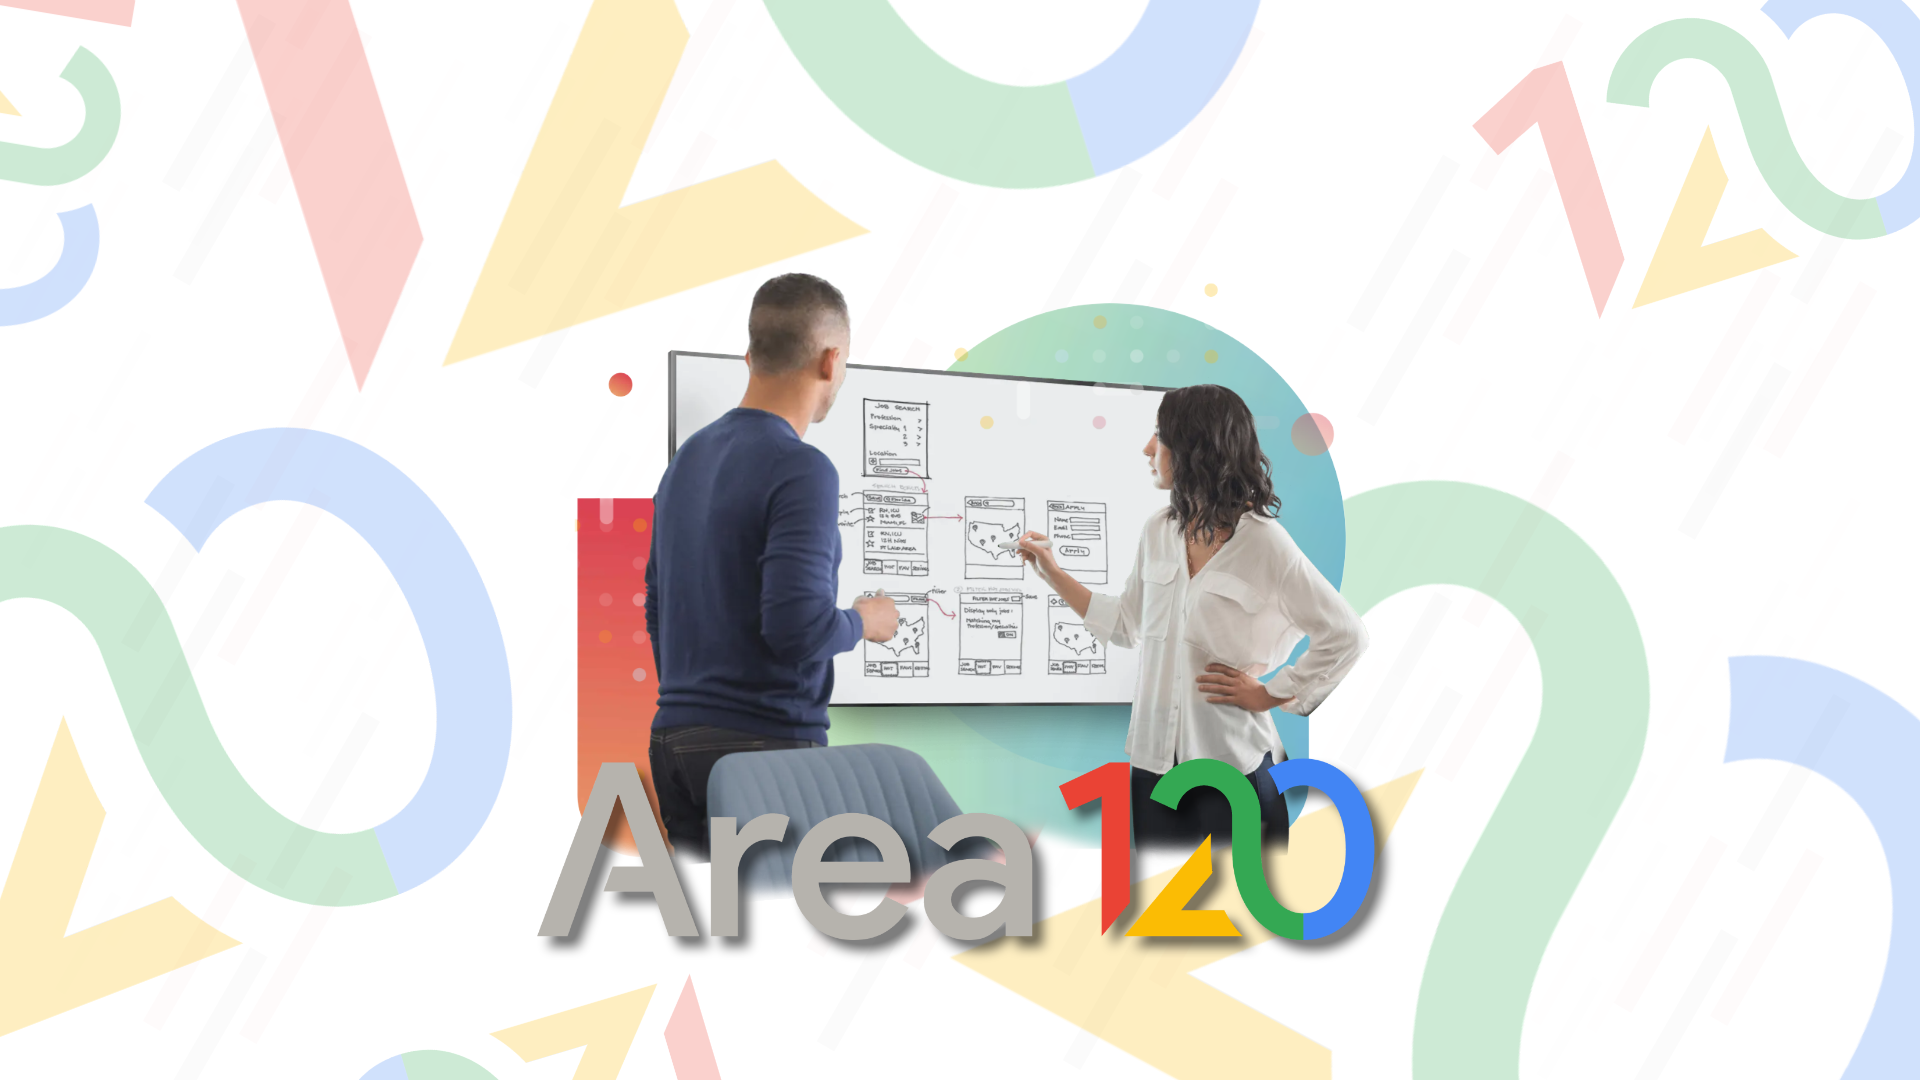 Area 120: Google encerrou metade dos projetos em desenvolvimento, funcionários podem ser demitidos